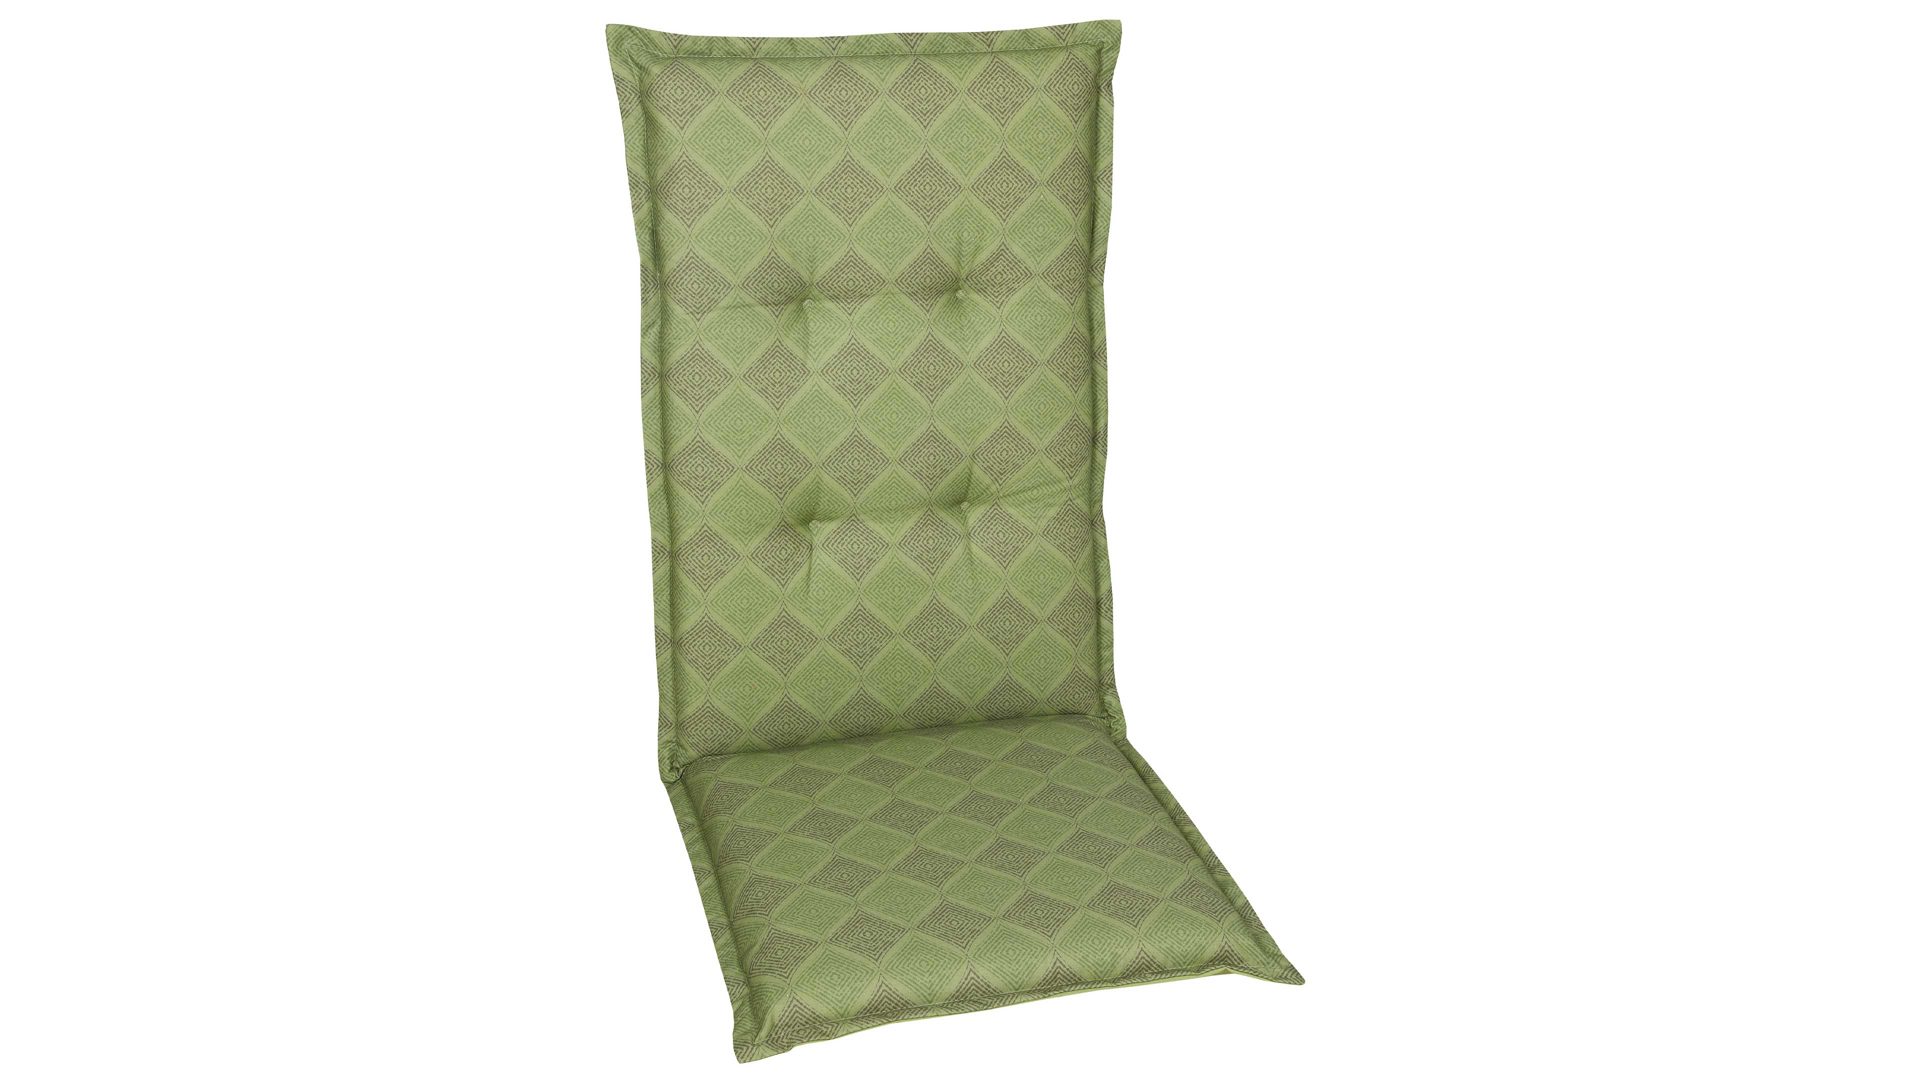 Polsterauflage Go-de textil aus Stoff in Grün GO-DE TEXTIL Auflagen Serie 19 - Sesselauflage grüne Rautenlinien - ca. 50 x 120 cm